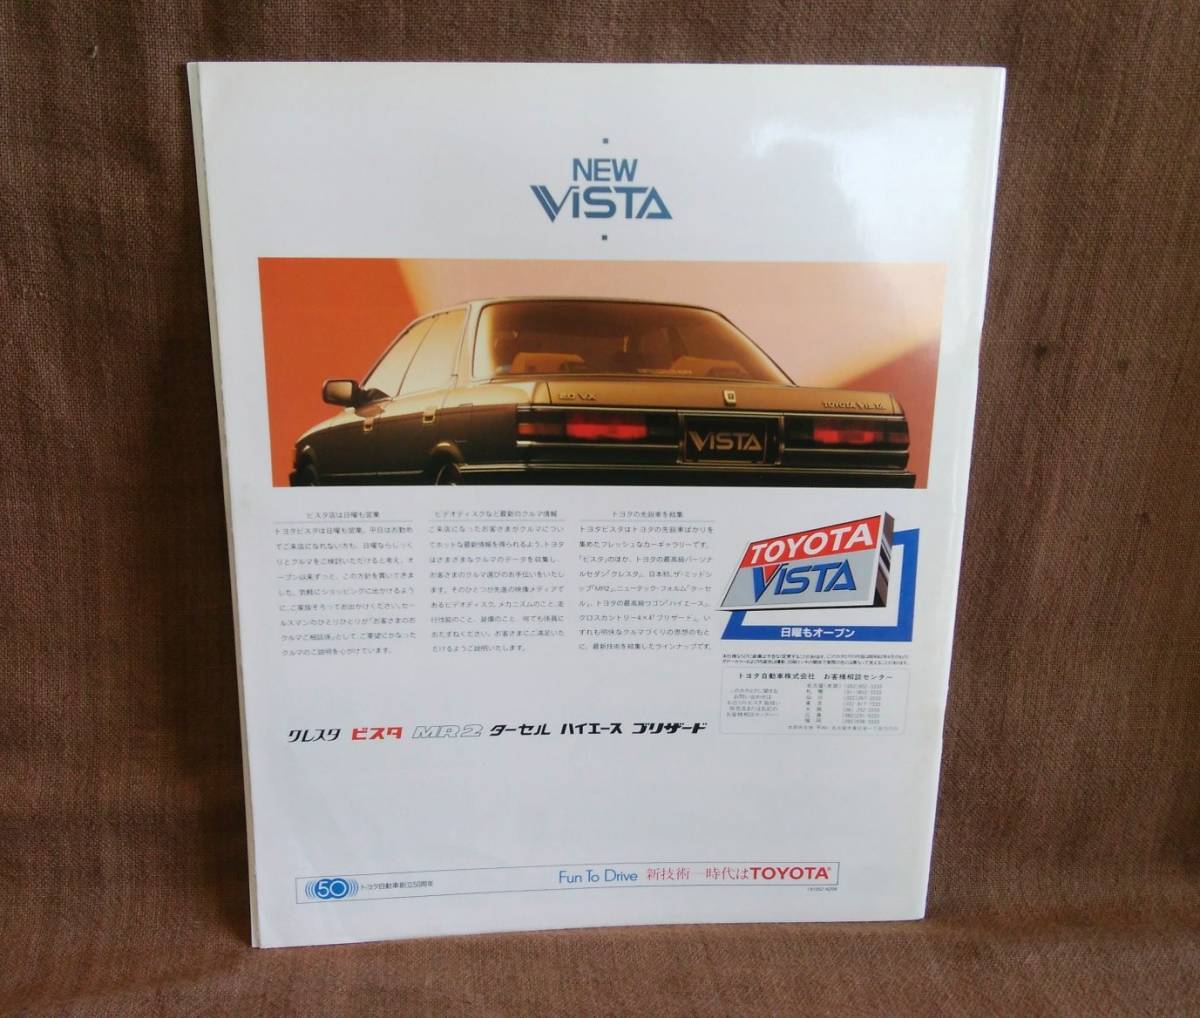  подлинная вещь TOYOTA Toyota VISTA Vista седан жесткий верх SV21 SV20 CV20 каталог Showa 62 год 4 месяц все цвет все 33 страница 